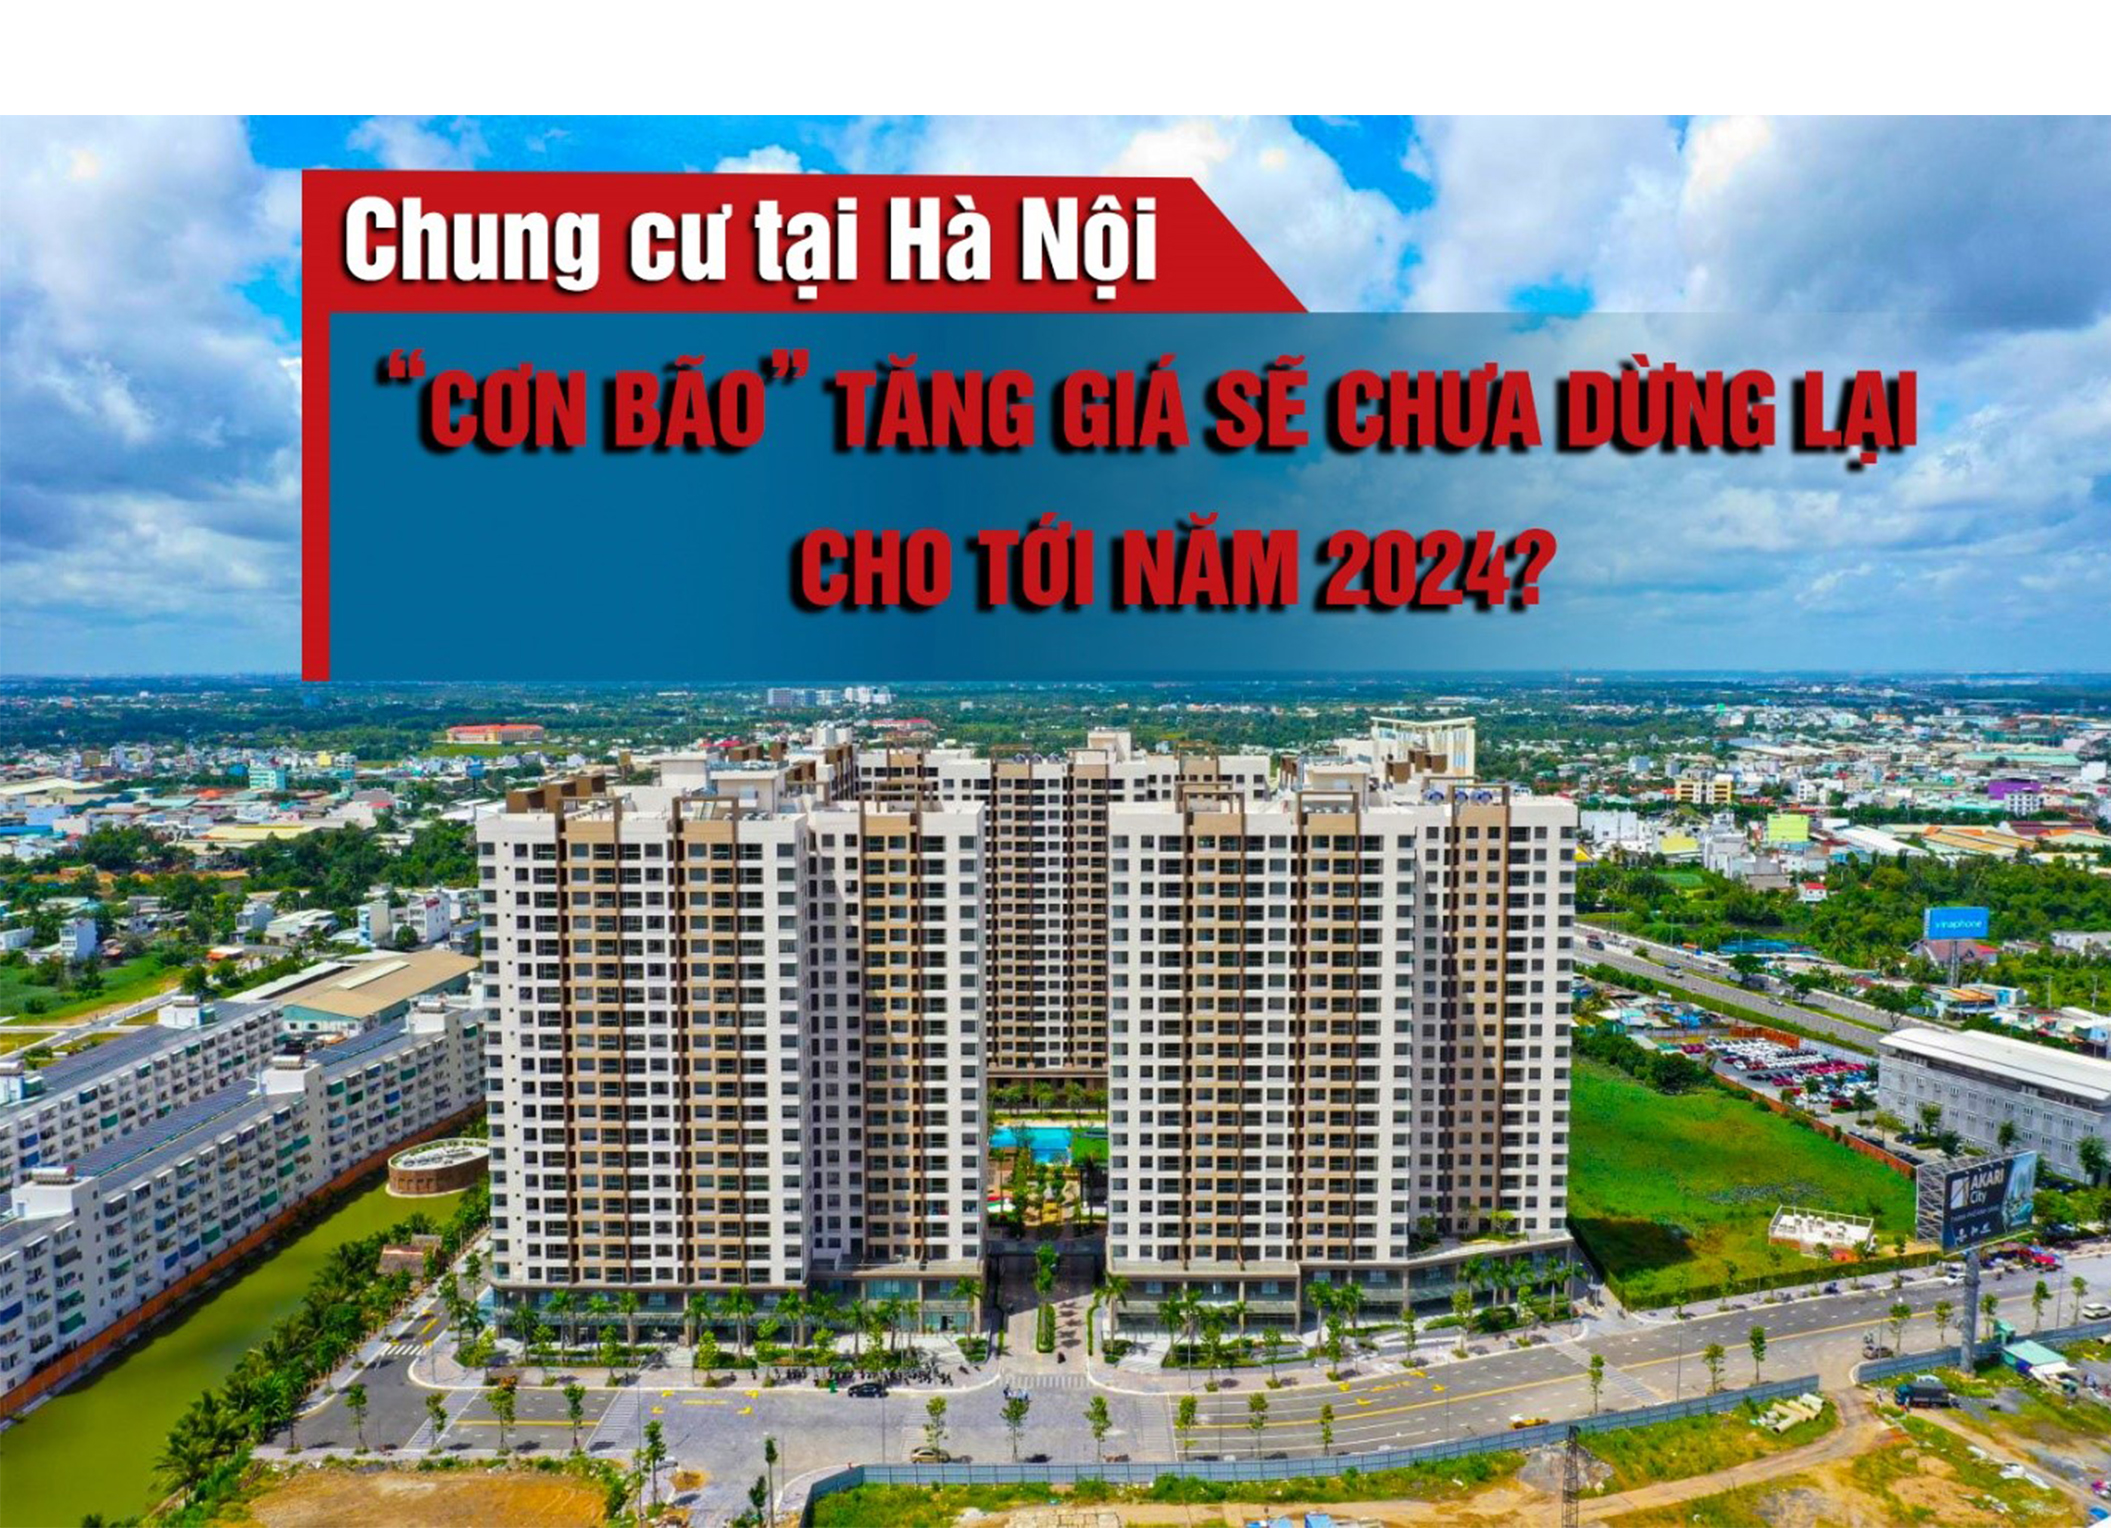 “Cơn bão” tăng giá chung cư tại Hà Nội sẽ chưa dừng lại cho tới năm 2024?